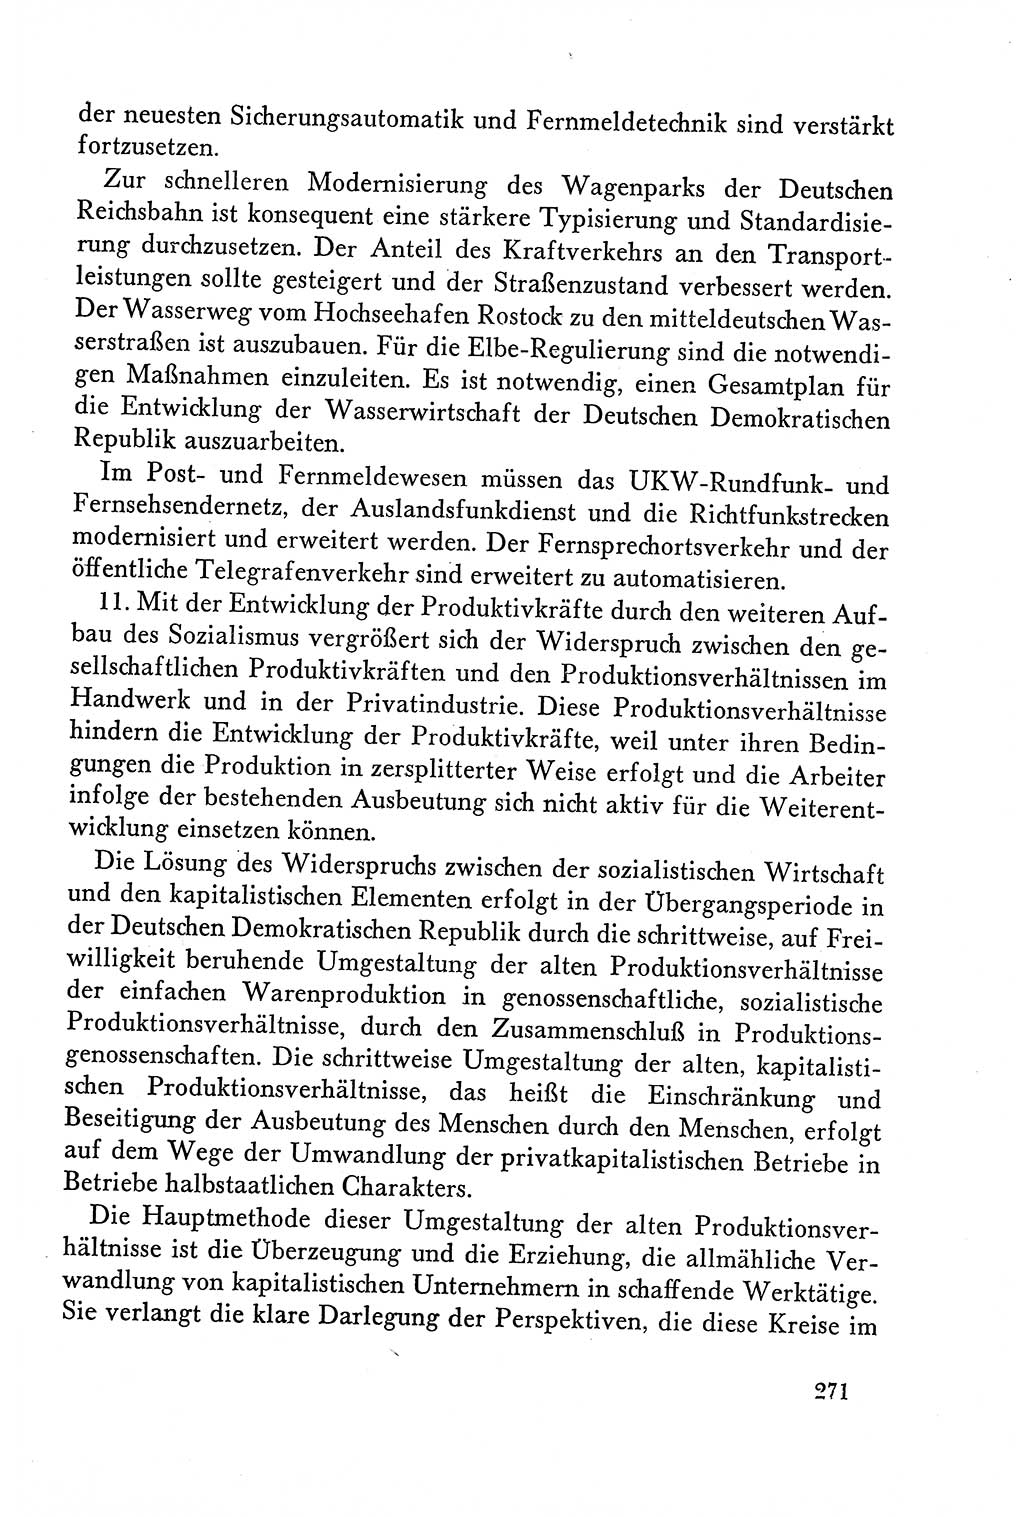 Dokumente der Sozialistischen Einheitspartei Deutschlands (SED) [Deutsche Demokratische Republik (DDR)] 1958-1959, Seite 271 (Dok. SED DDR 1958-1959, S. 271)